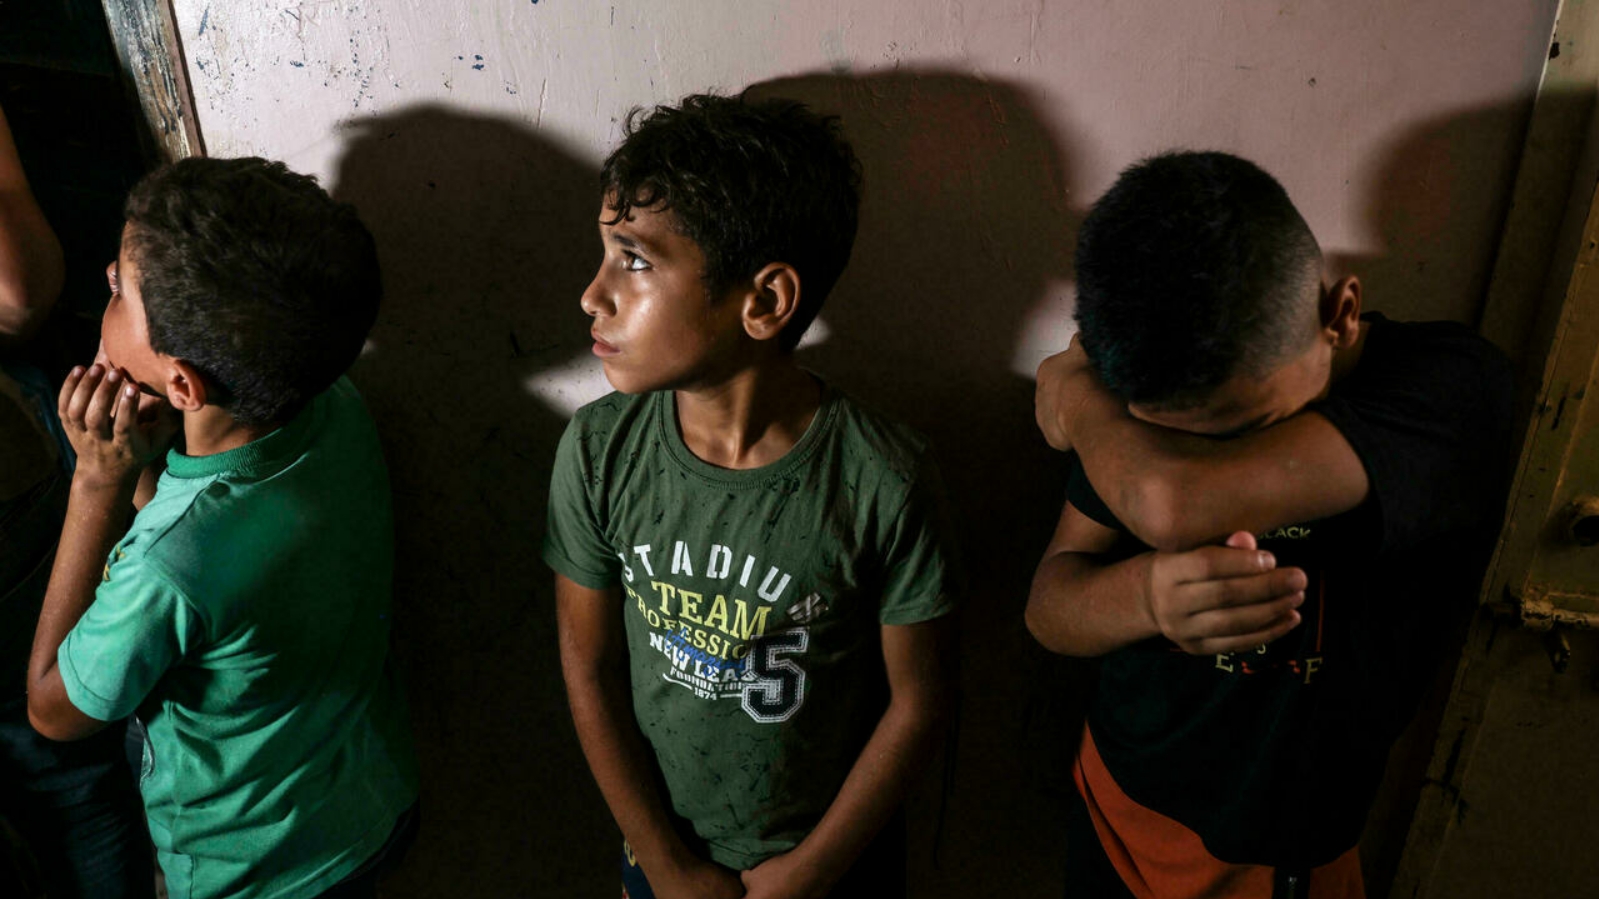 أطفال يحضرون جنازة الطفل عمر حسن أبو النيل البالغ من العمر 12 عامًا والذي أصيب الأسبوع الماضي برصاص جنود إسرائيليين خلال مواجهات على طول حدود قطاع غزة المحاصر، وتوفي لاحقًا متأثرًا بجراحه. بتاريخ 28 آب/ أغسطس 2021.